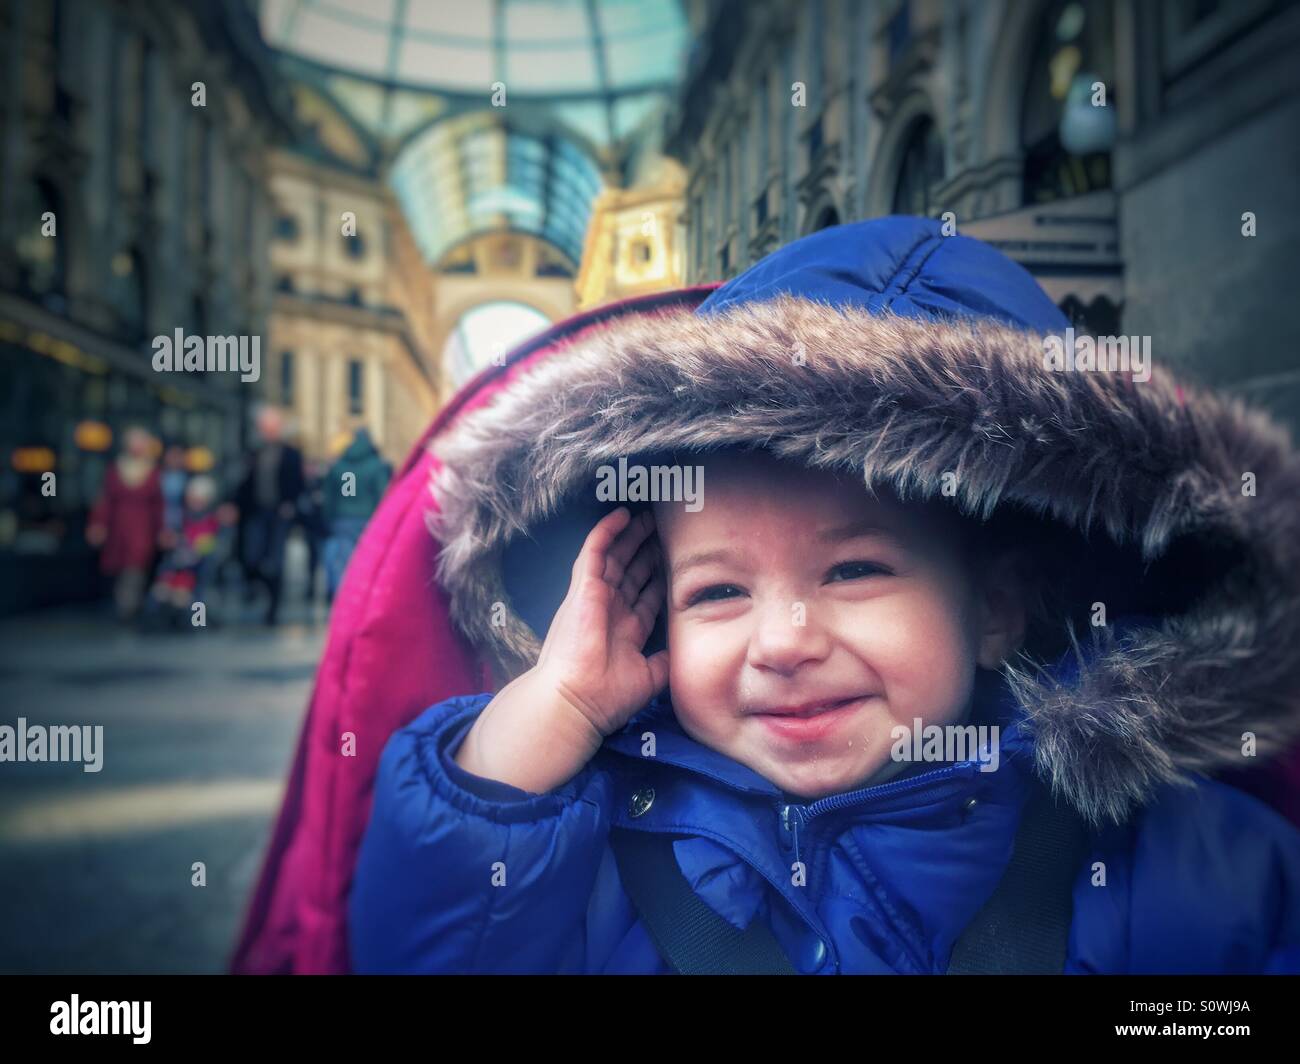 Happy baby portrait Stock Photo